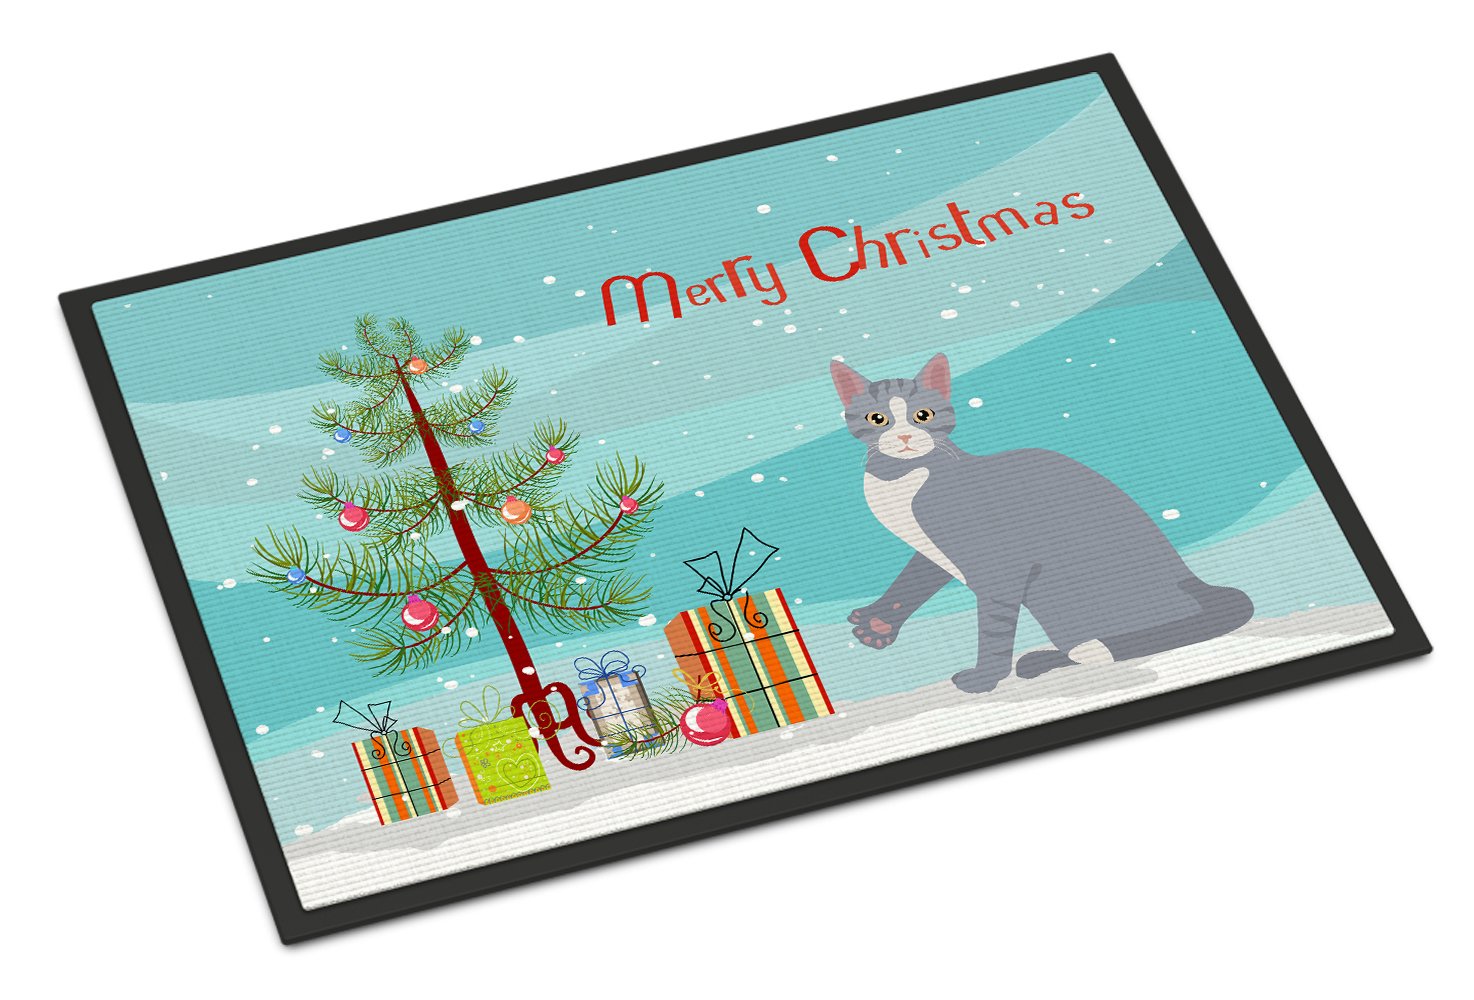 American Polydactyl #2 Cat Merry Christmas Indoor or Outdoor Mat 24x36 CK4743JMAT by Caroline's Treasures